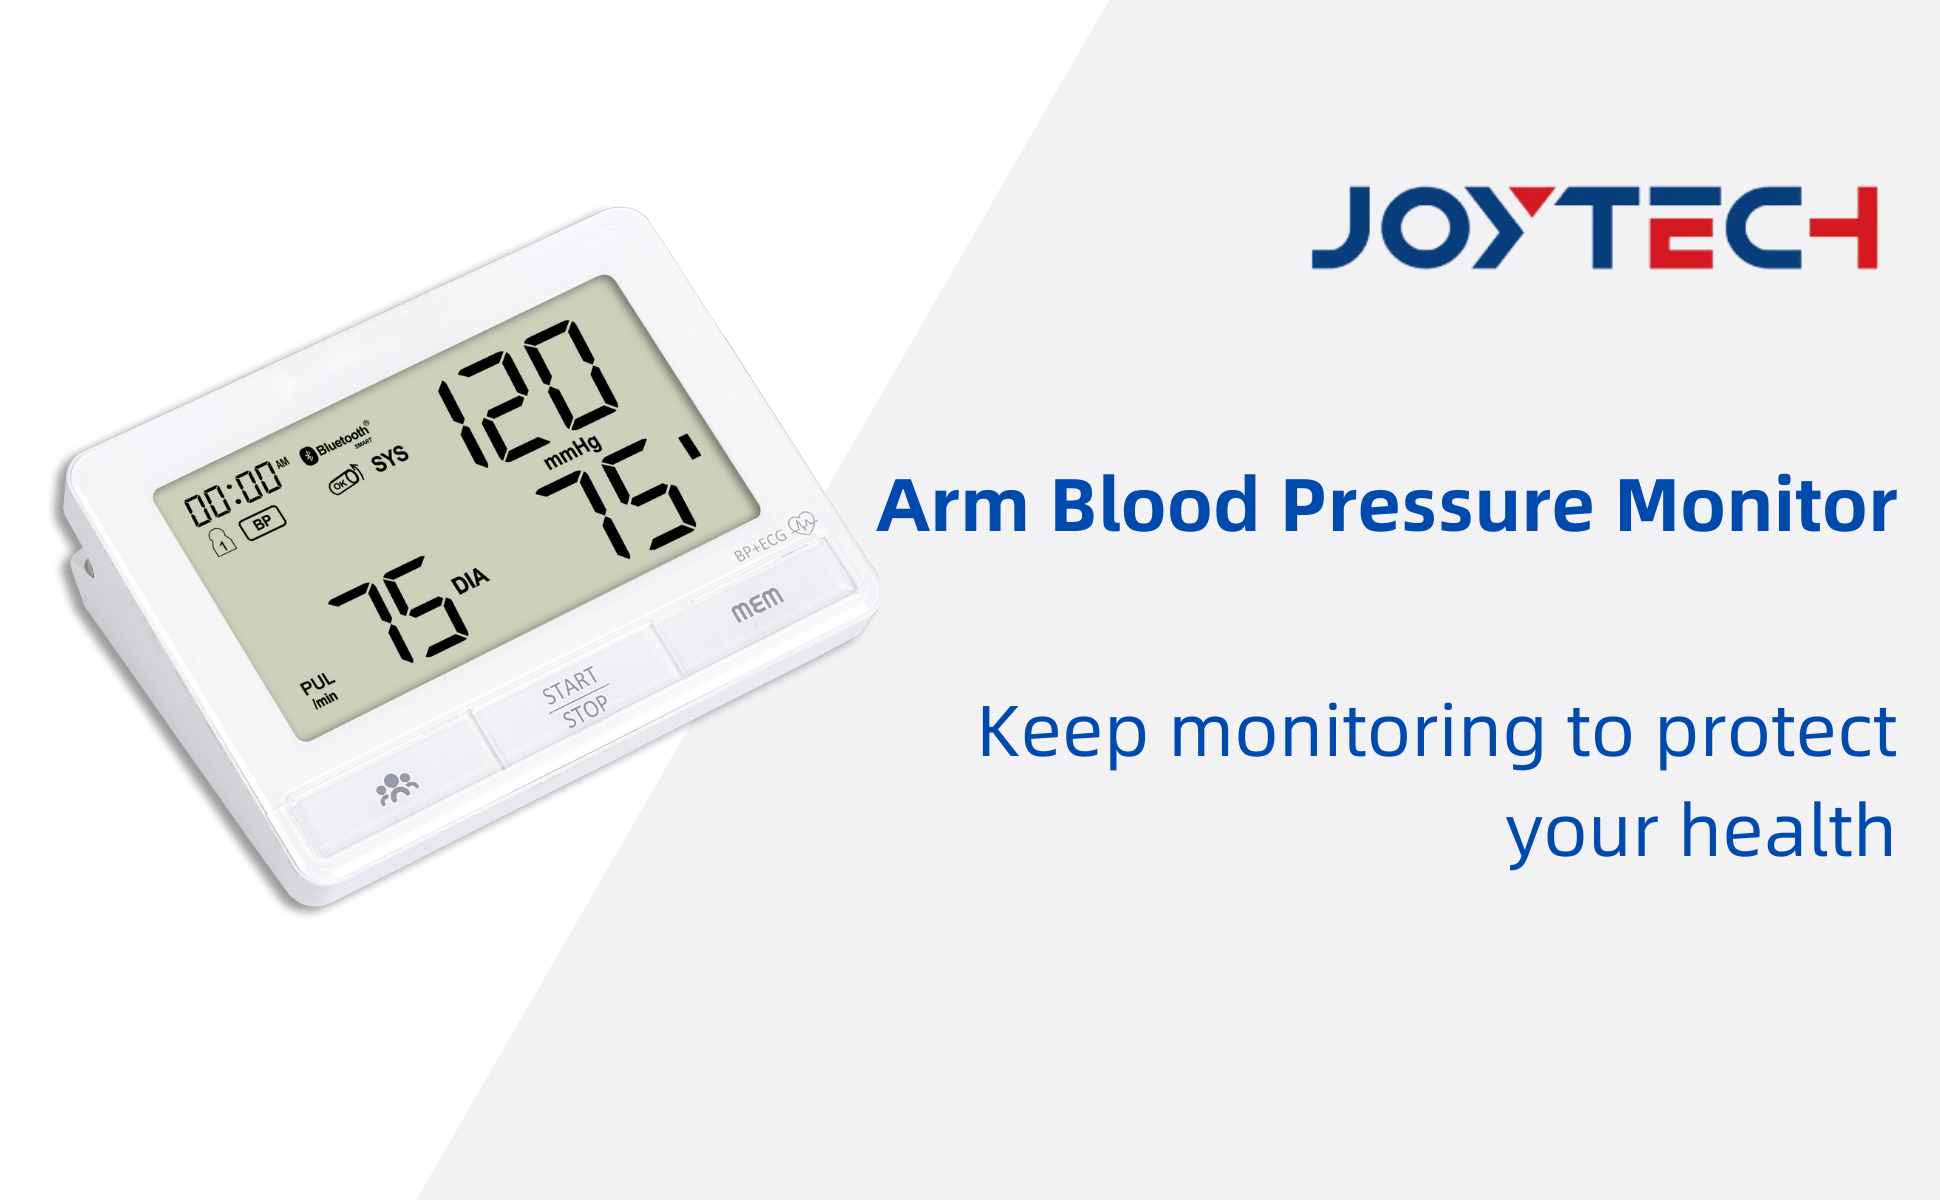 2022 Joytech Bag-ong Gilusad nga Arm Blood Pressure Monitor